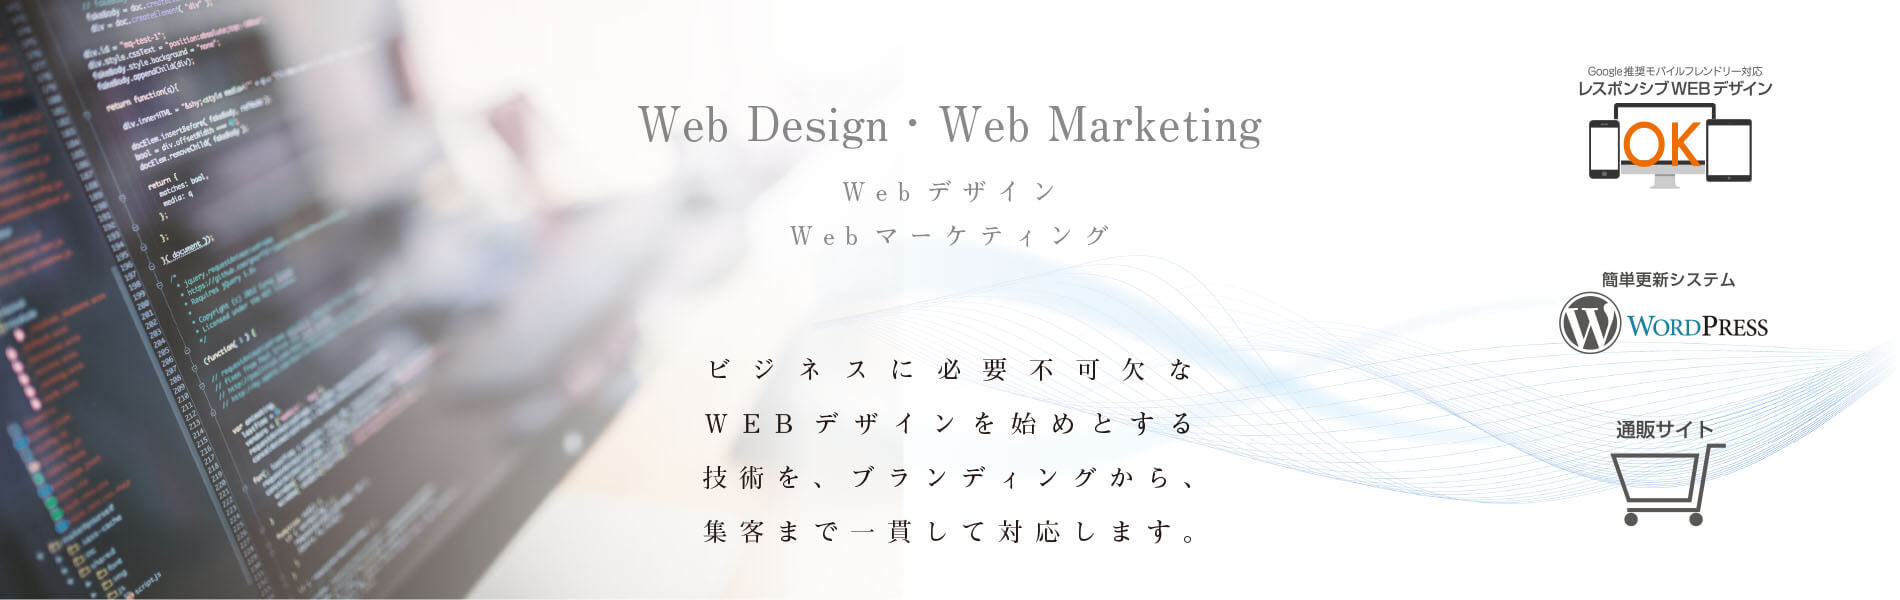 WEBデザイン・WEBマーケティングはアド・クリップへ